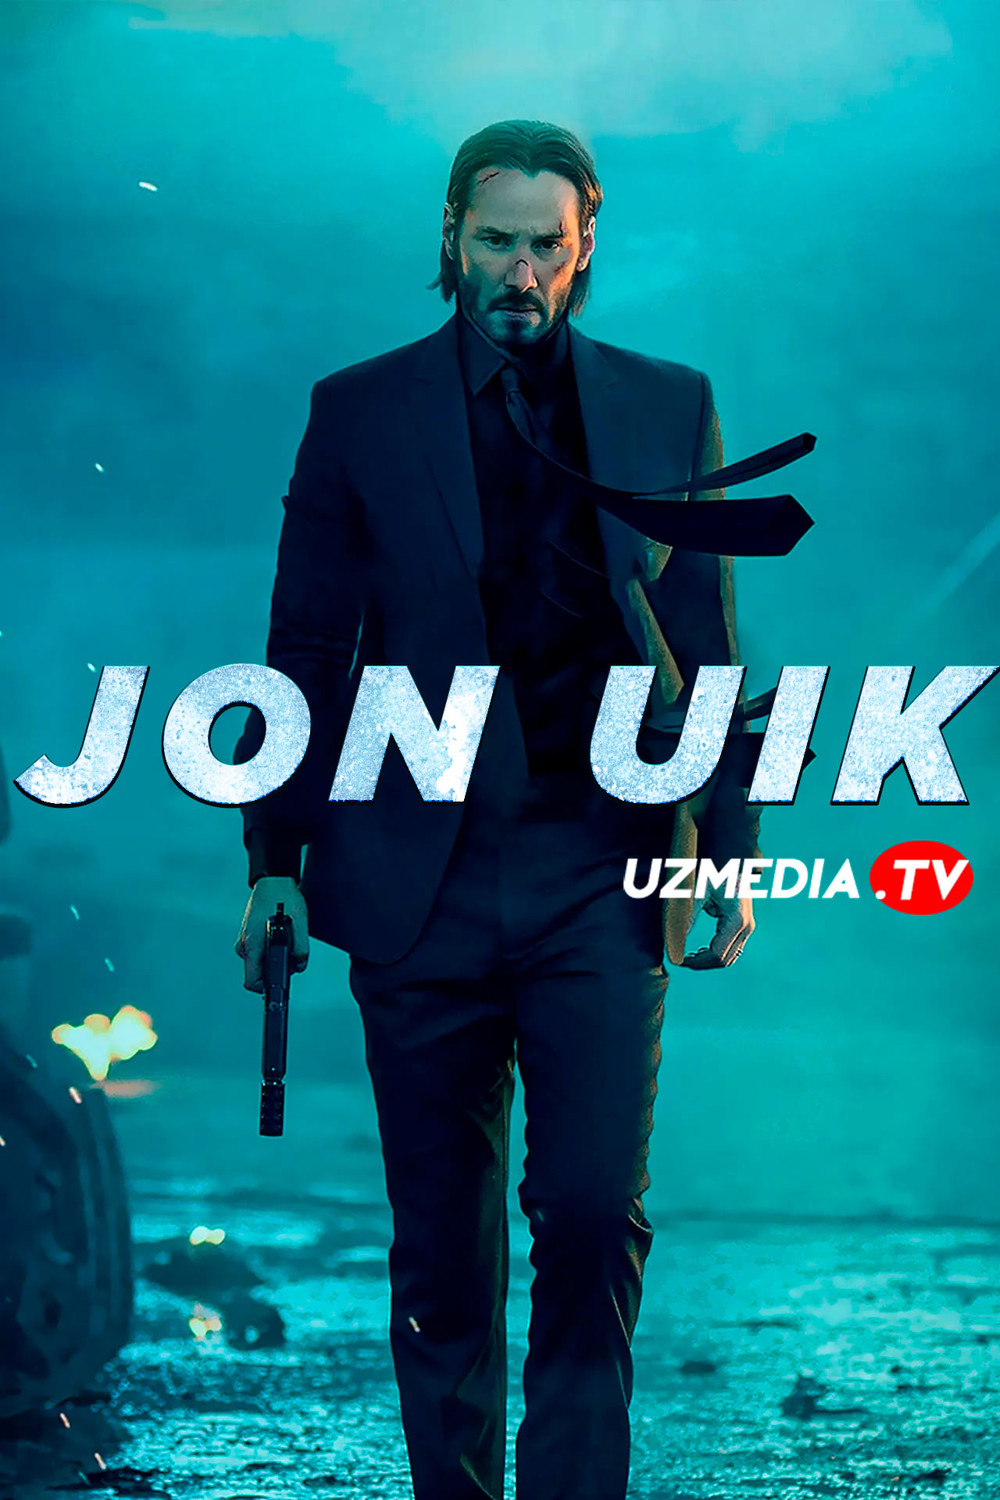 Jon Uik 1 / Jon Vik 1 Uzbek tilida O'zbekcha tarjima kino 2014 Full HD tas-ix skachat